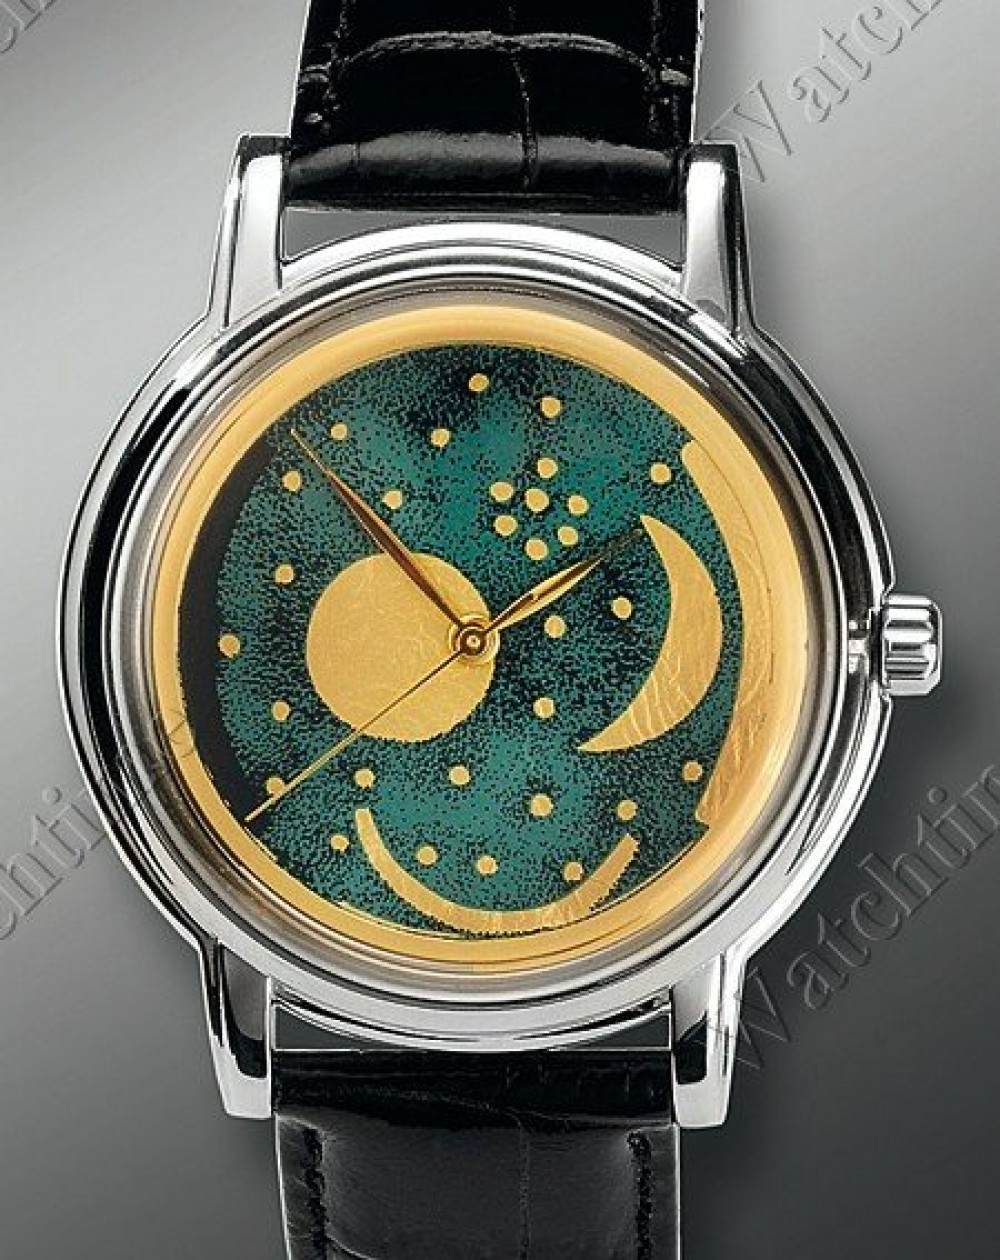 Zegarek firmy JSK Collection, model Himmelsscheibe von Nebra